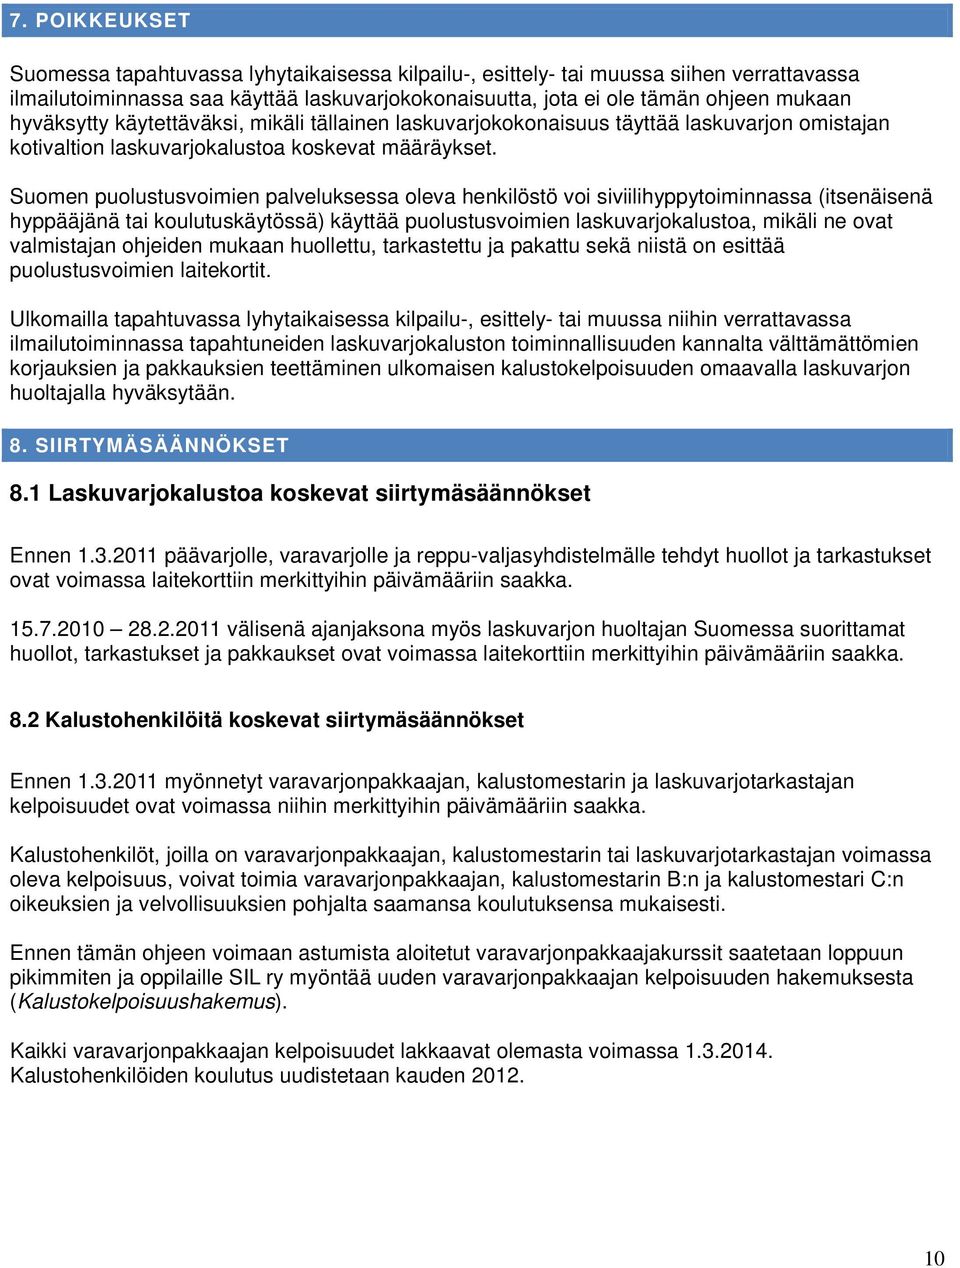 Suomen puolustusvoimien palveluksessa oleva henkilöstö voi siviilihyppytoiminnassa (itsenäisenä hyppääjänä tai koulutuskäytössä) käyttää puolustusvoimien laskuvarjokalustoa, mikäli ne ovat